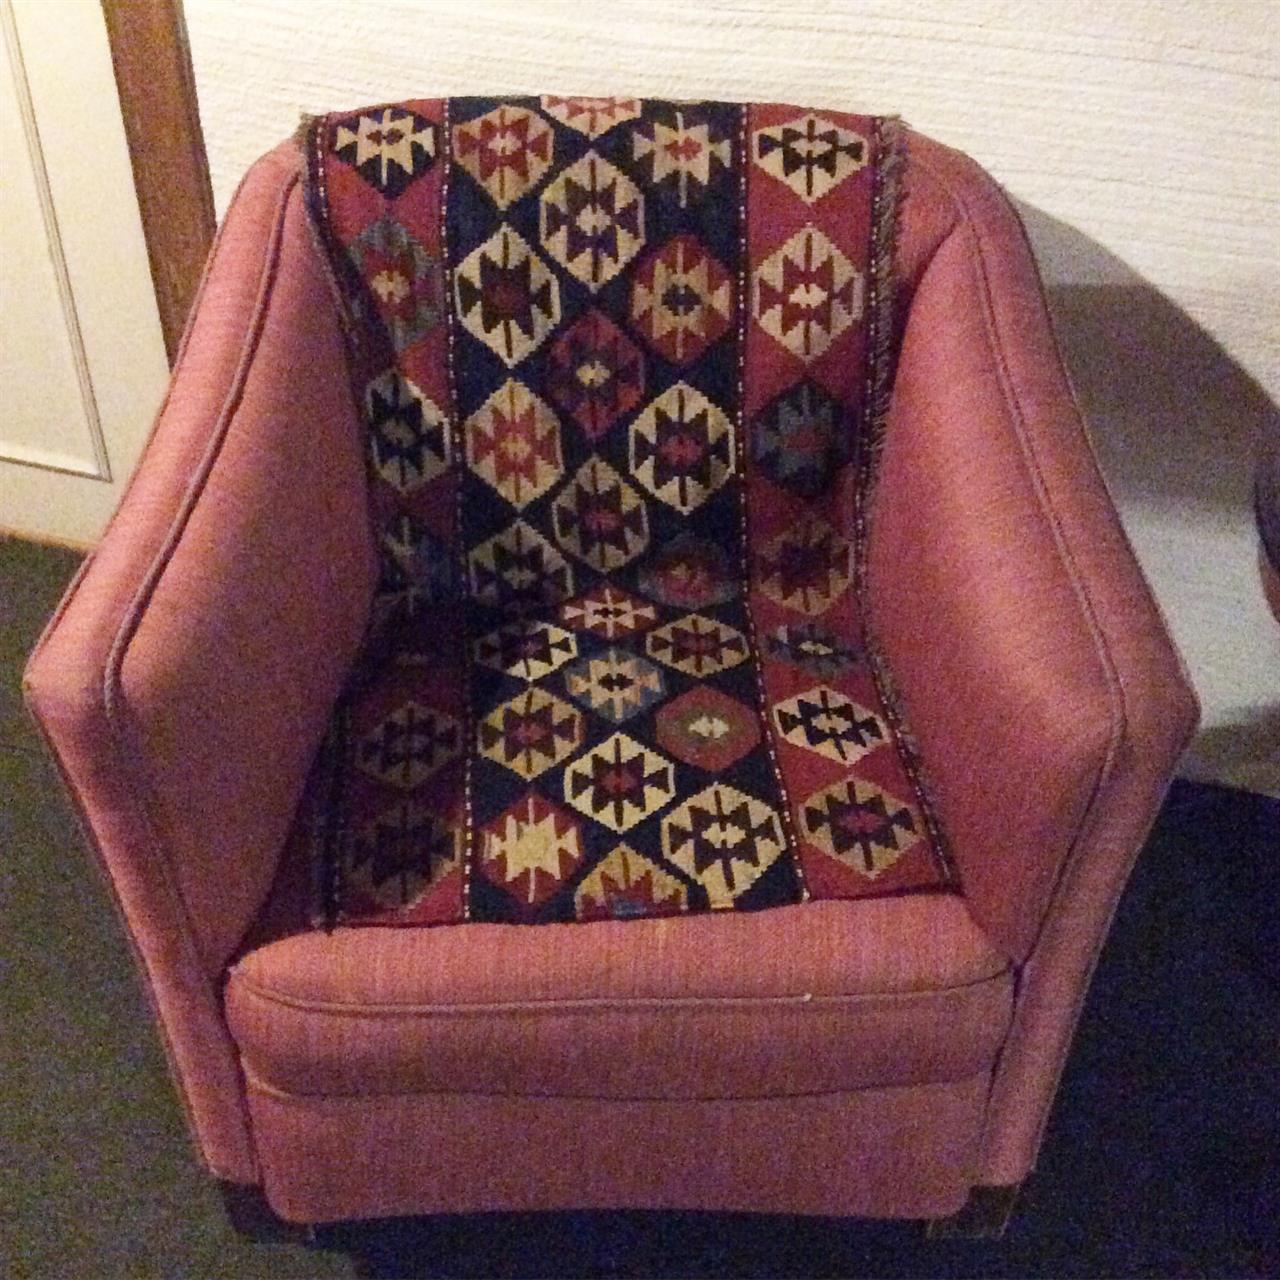 En mafrash pynter opp en sliten stol